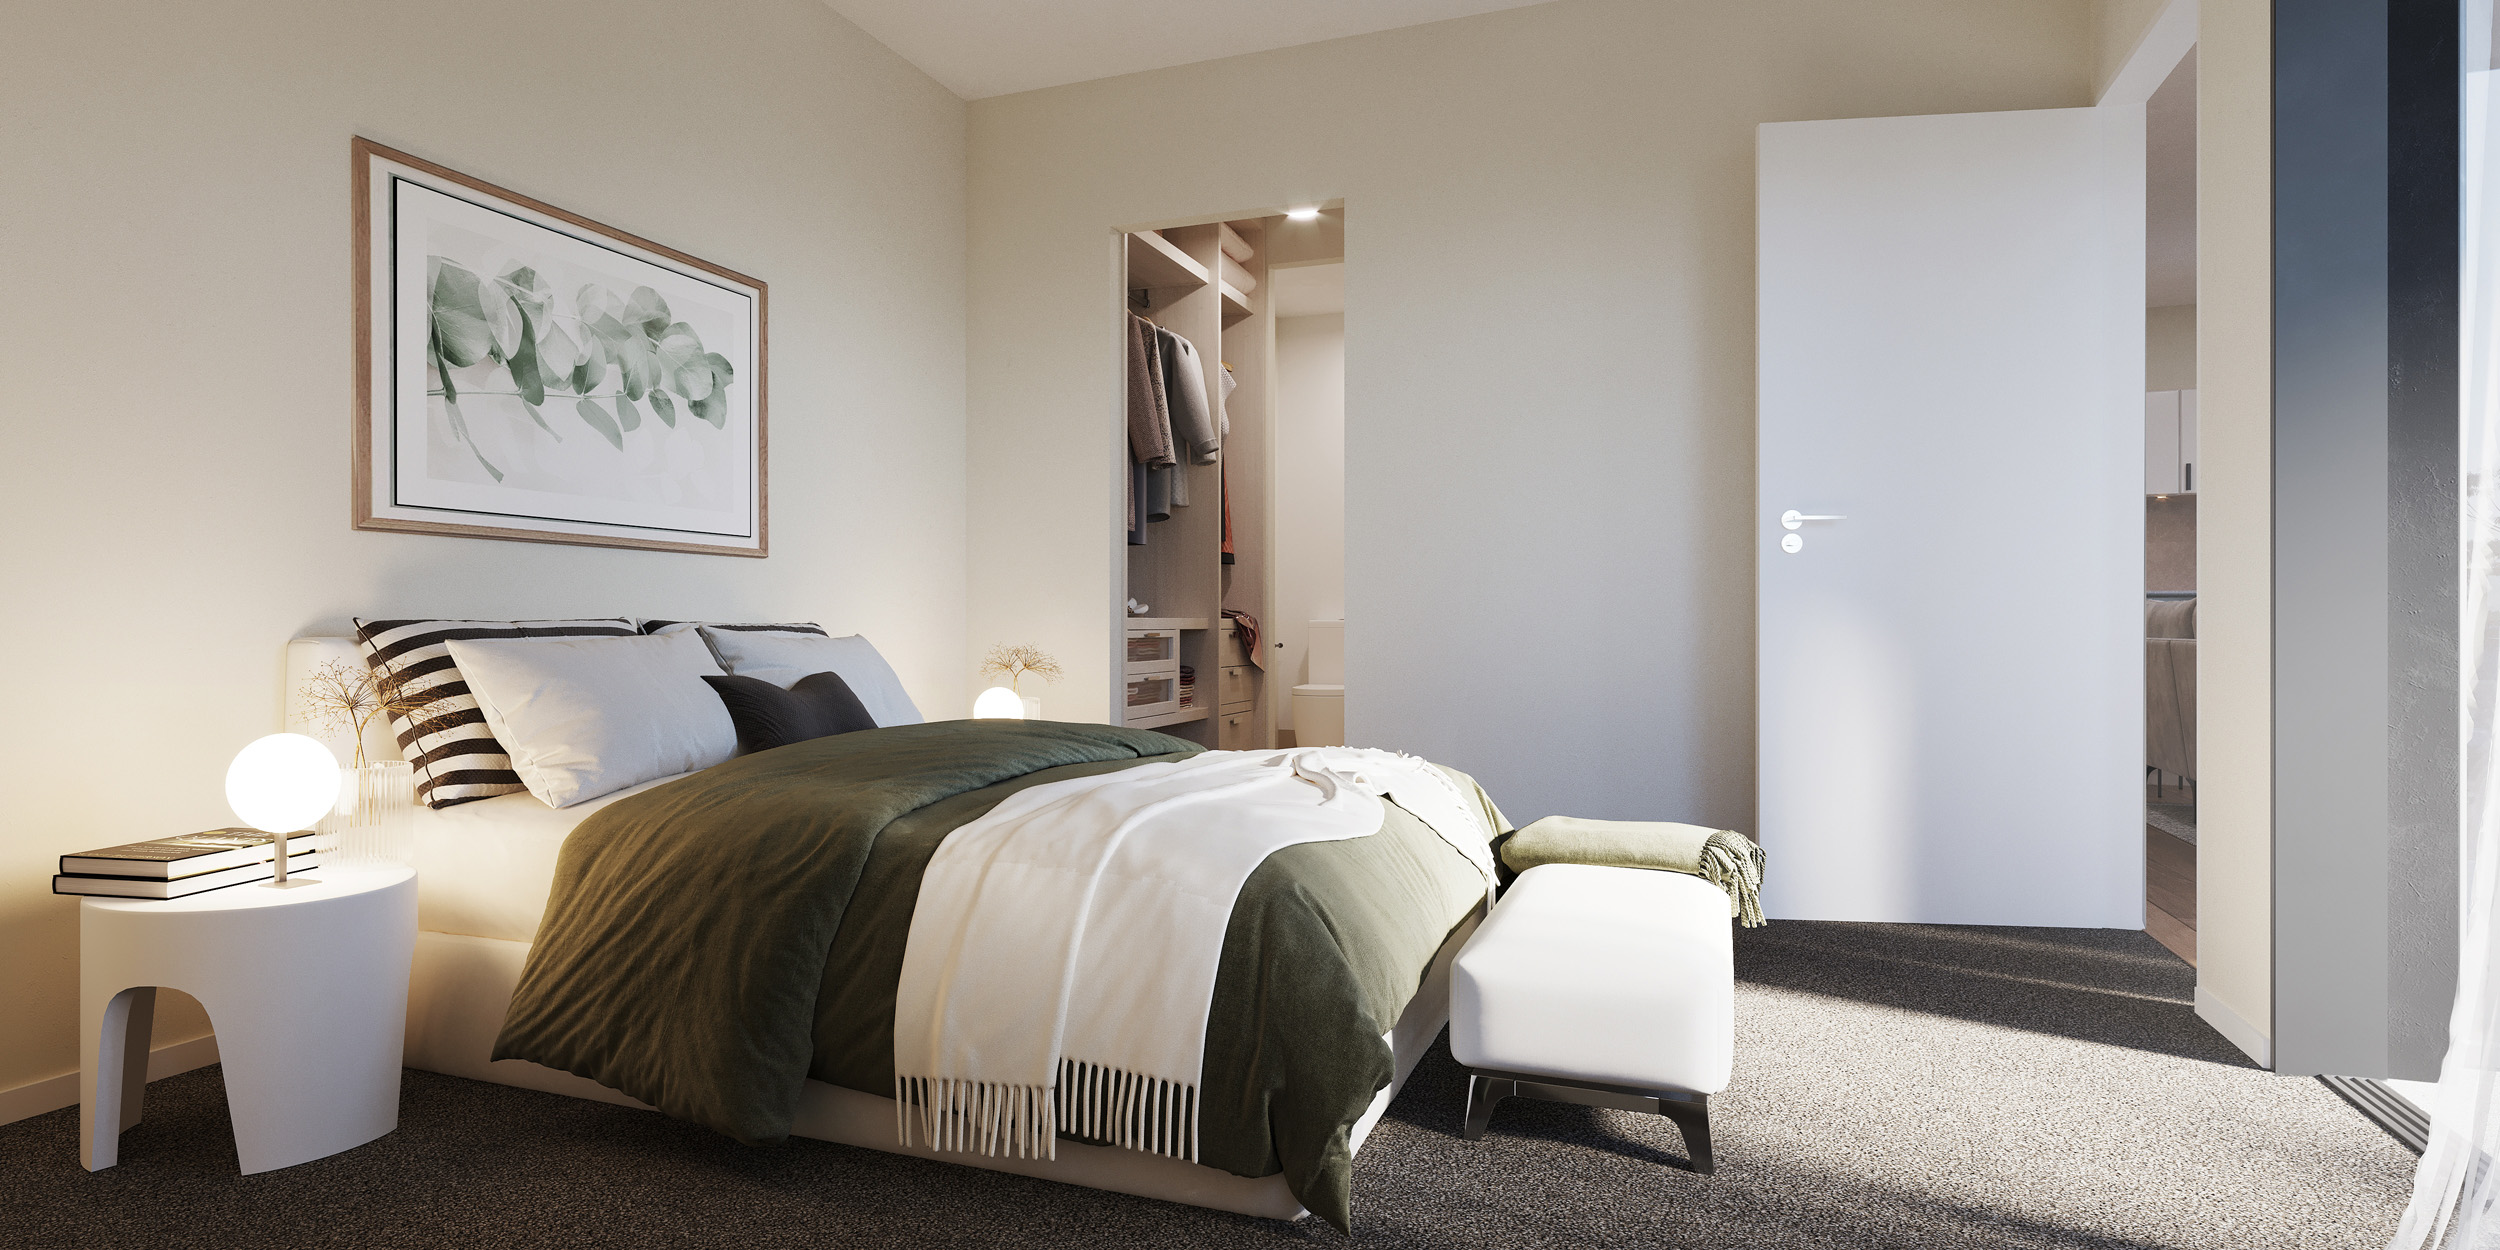 Shillito Apartments Bedroom 3D Render